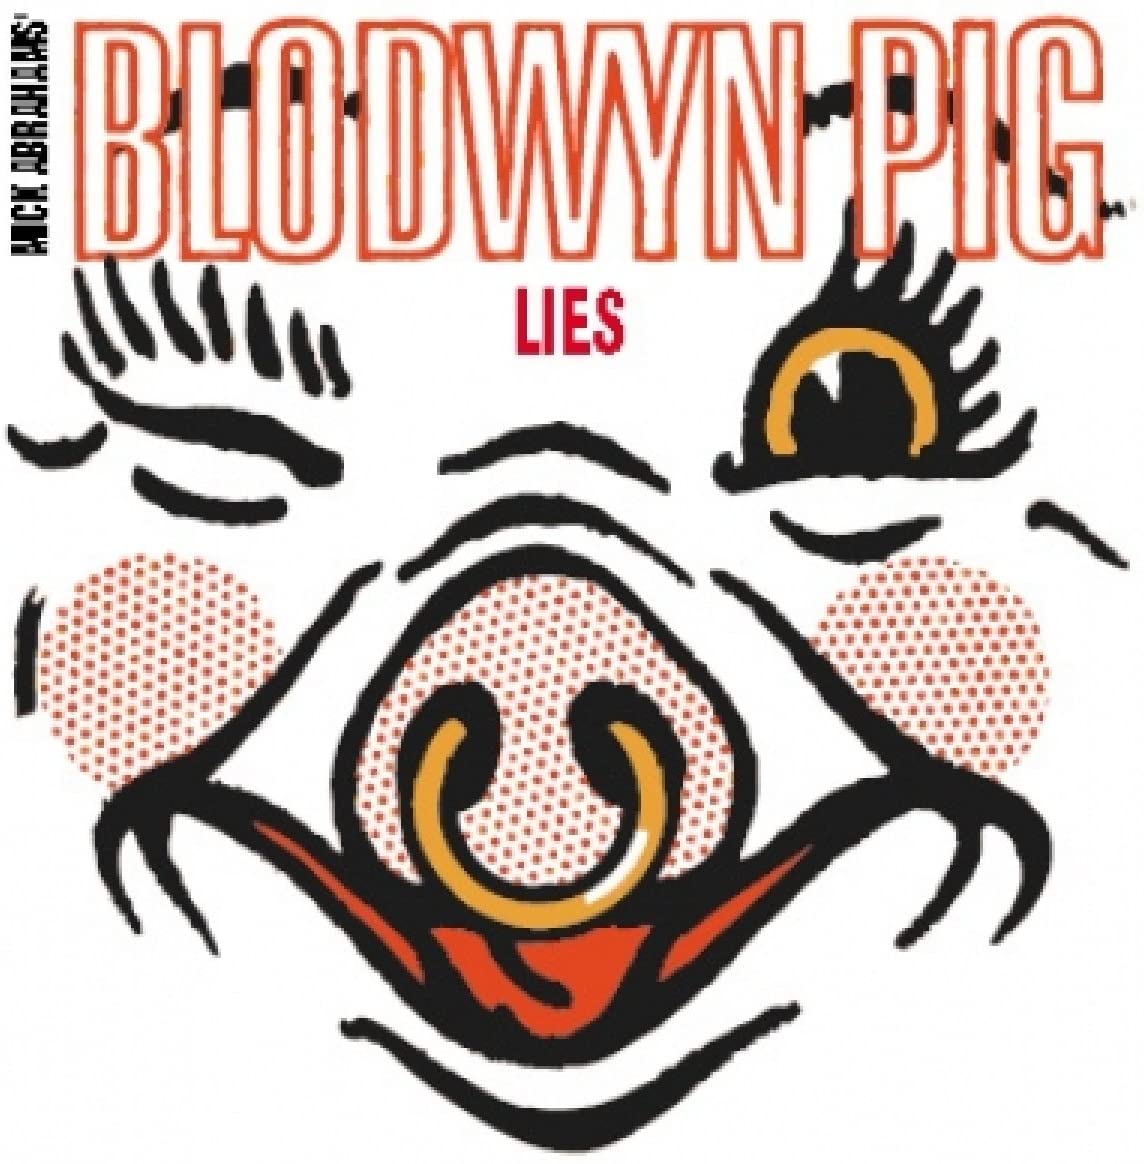 Blodwyn Pig - Lies - CD